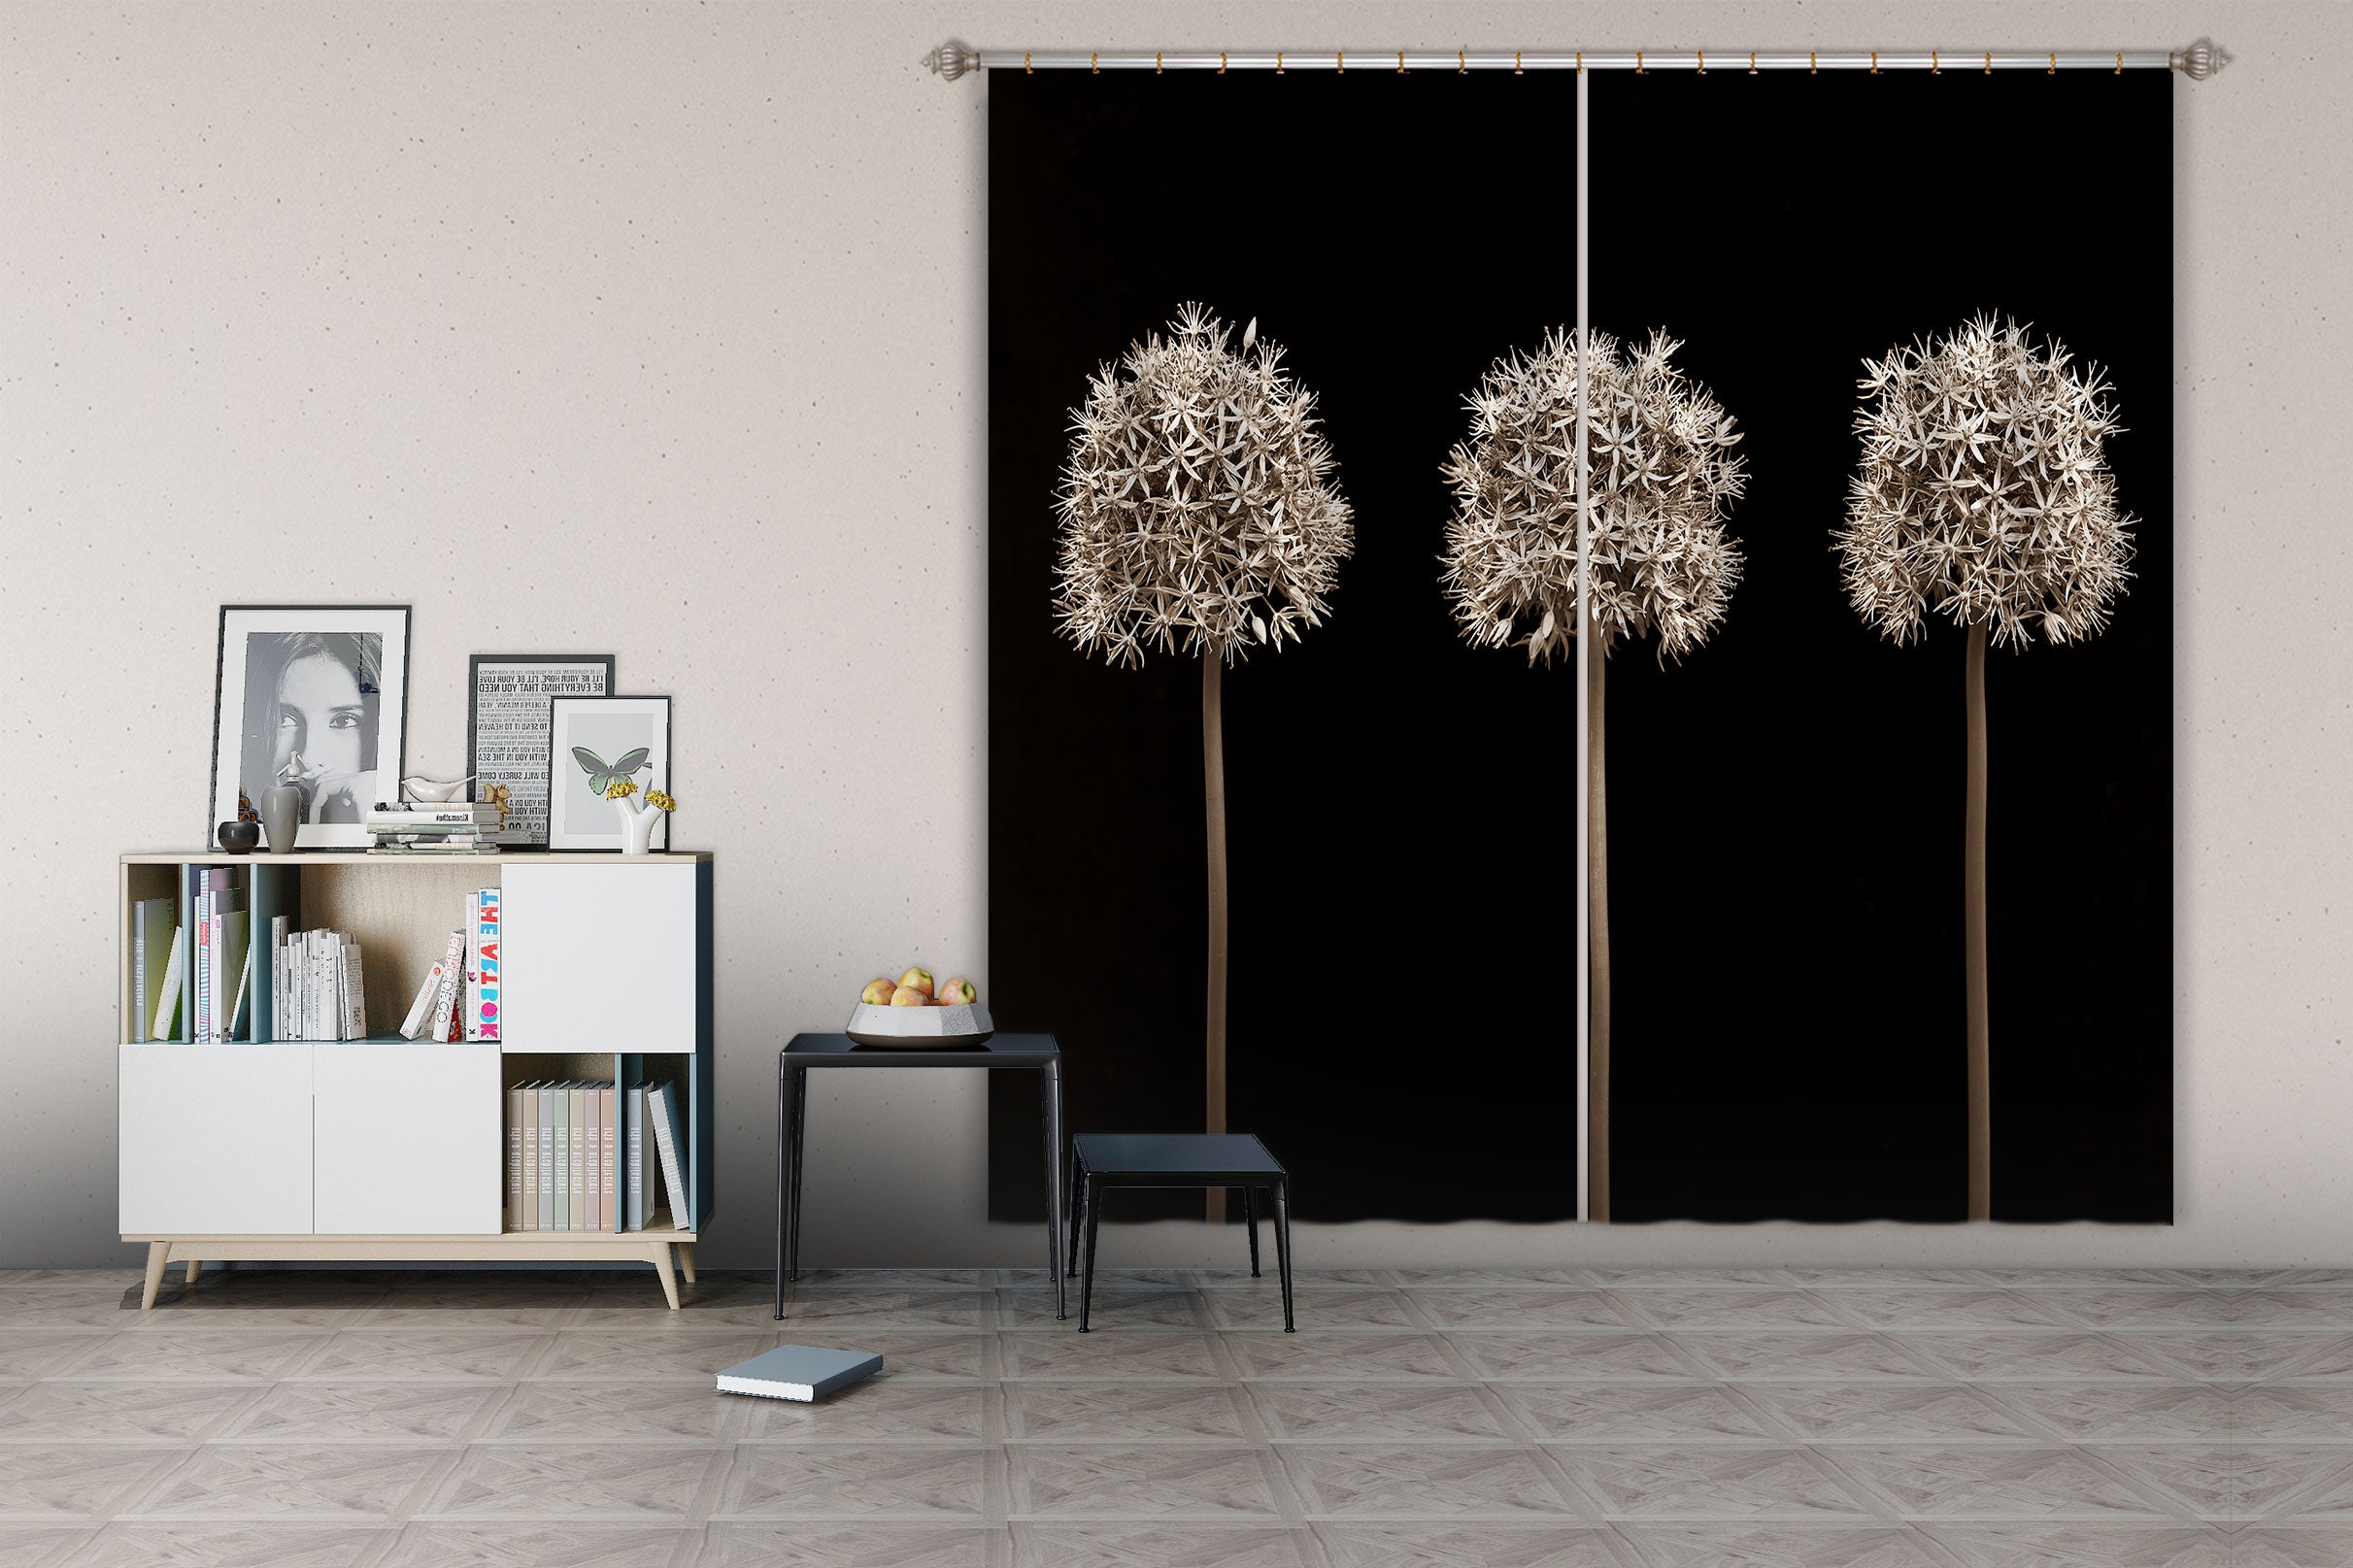 3D Dandelion Flower 6502 Assaf Frank Curtain Curtains Drapes